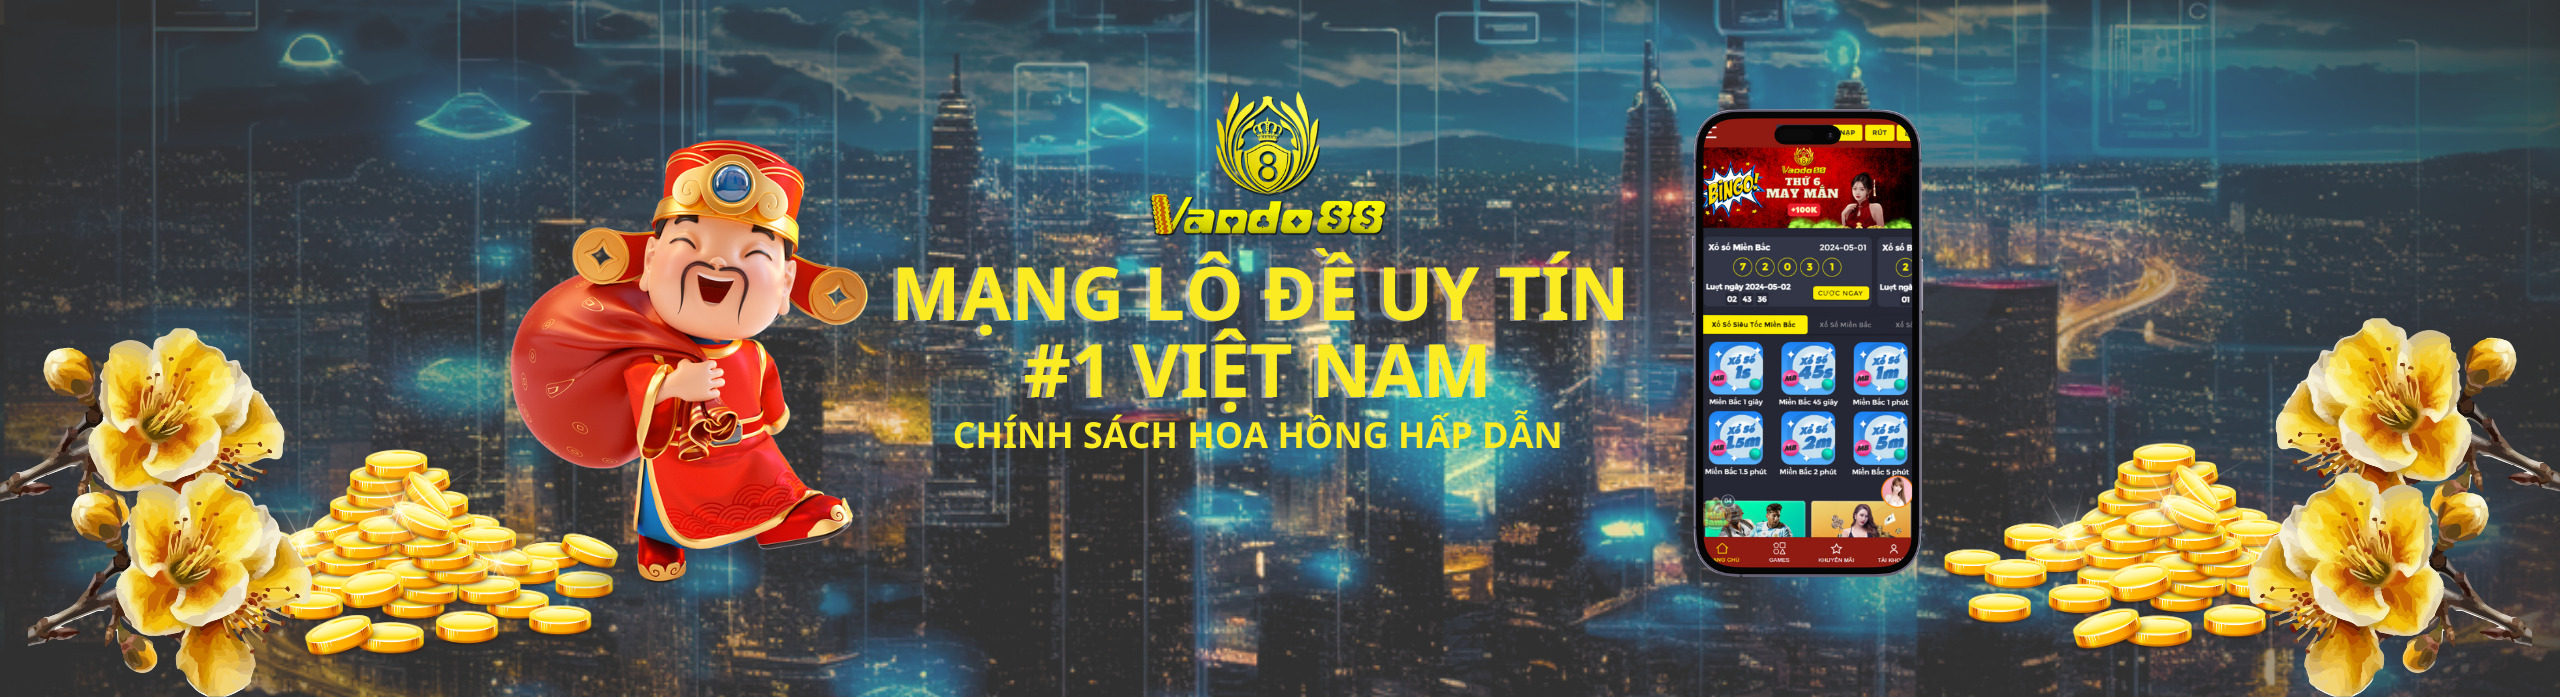 Vando88 mạng lô đề uy tín hàng đầu Việt Nam